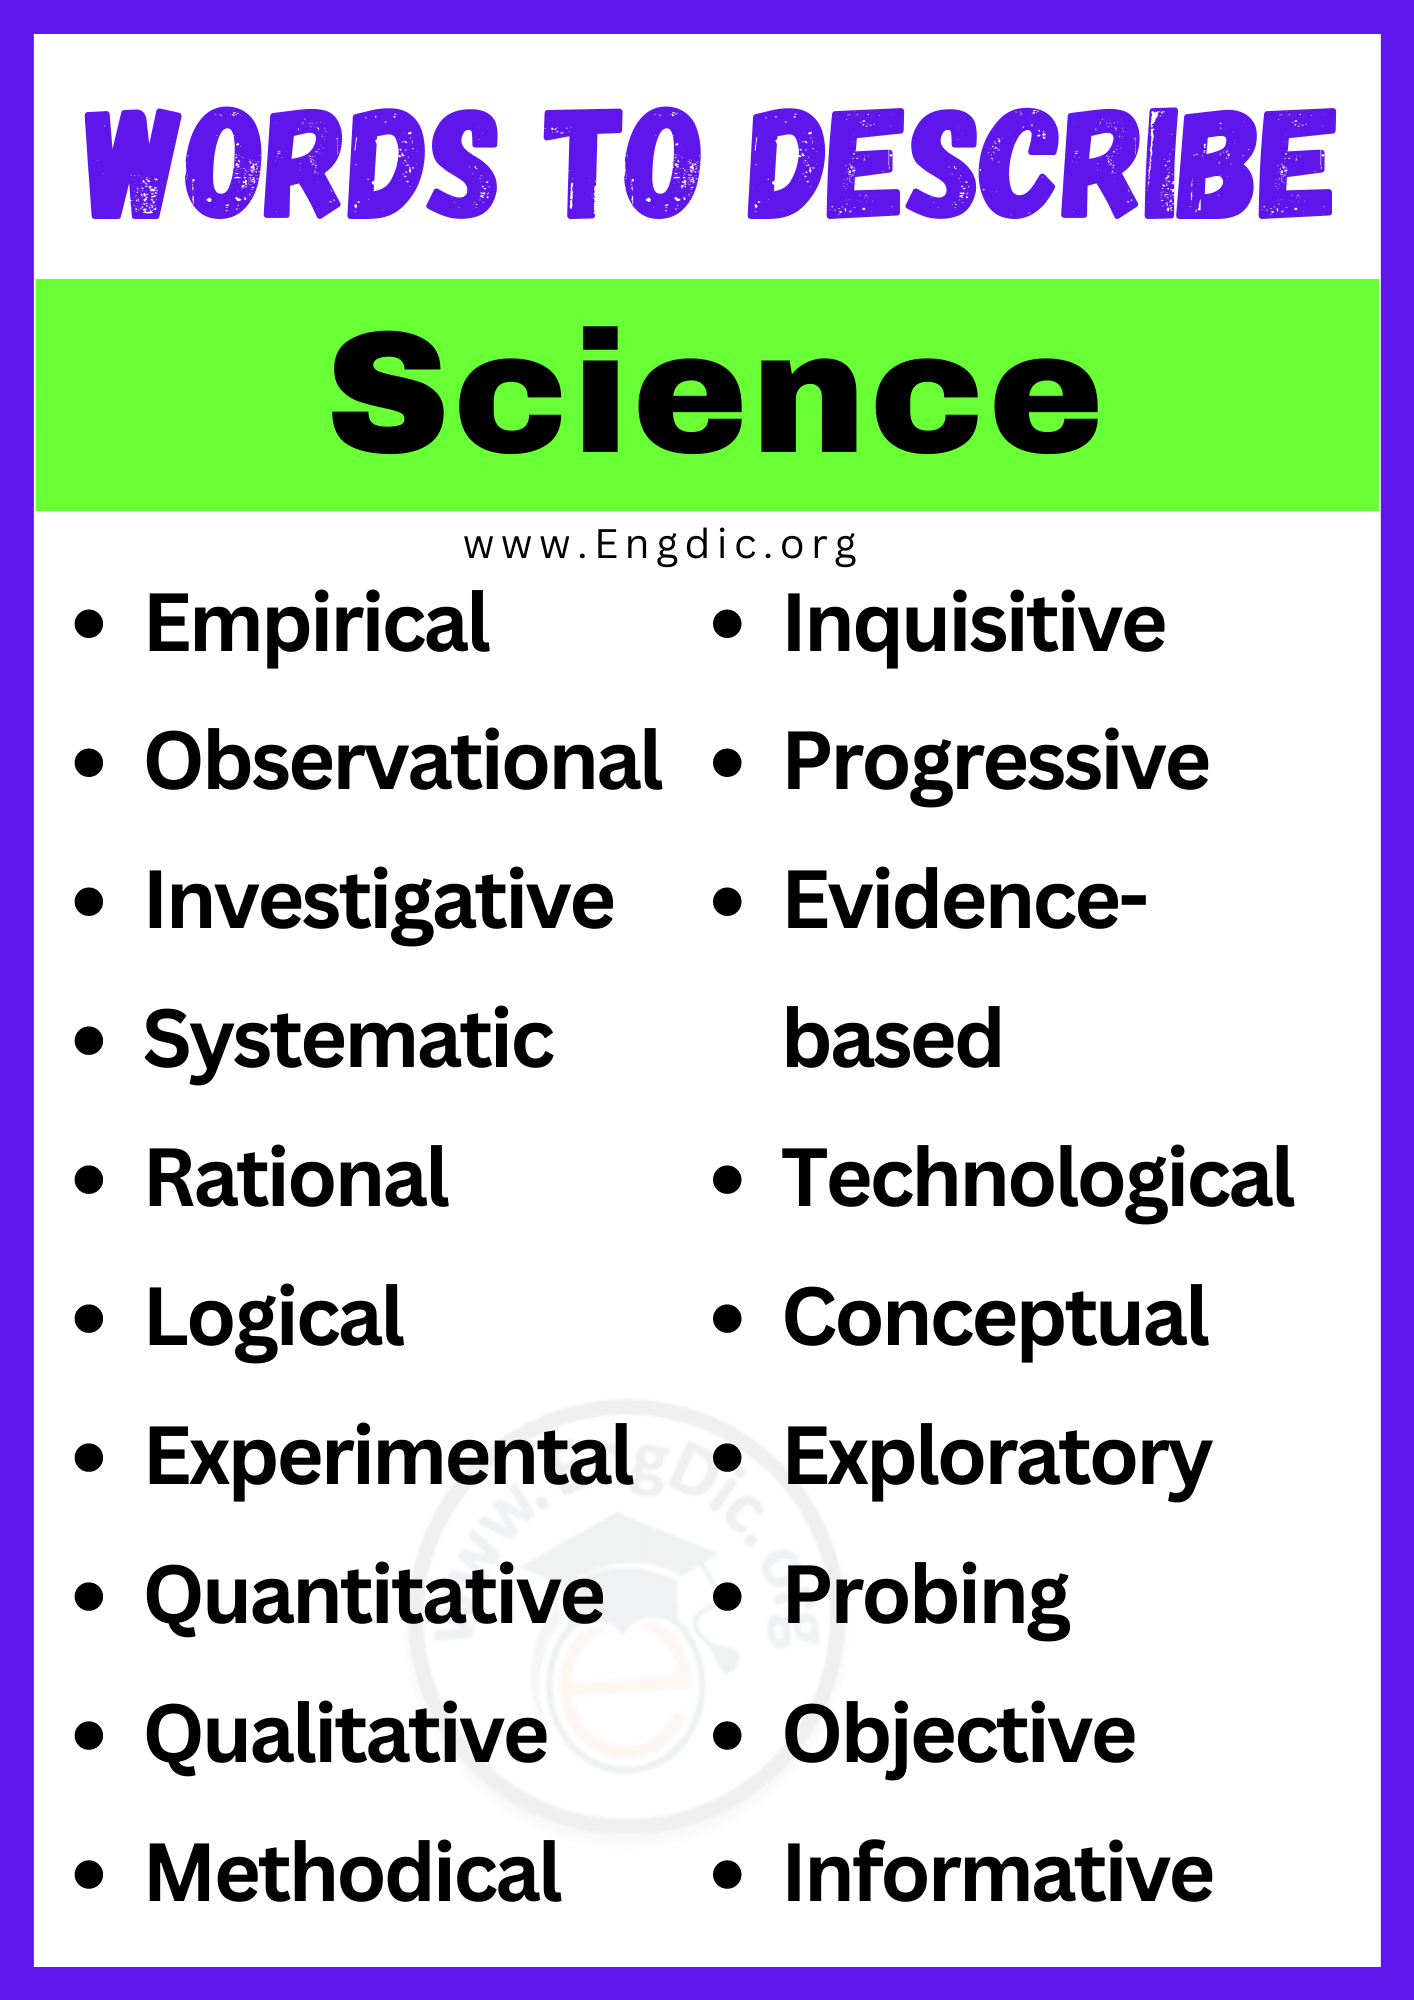 Words to Describe Science